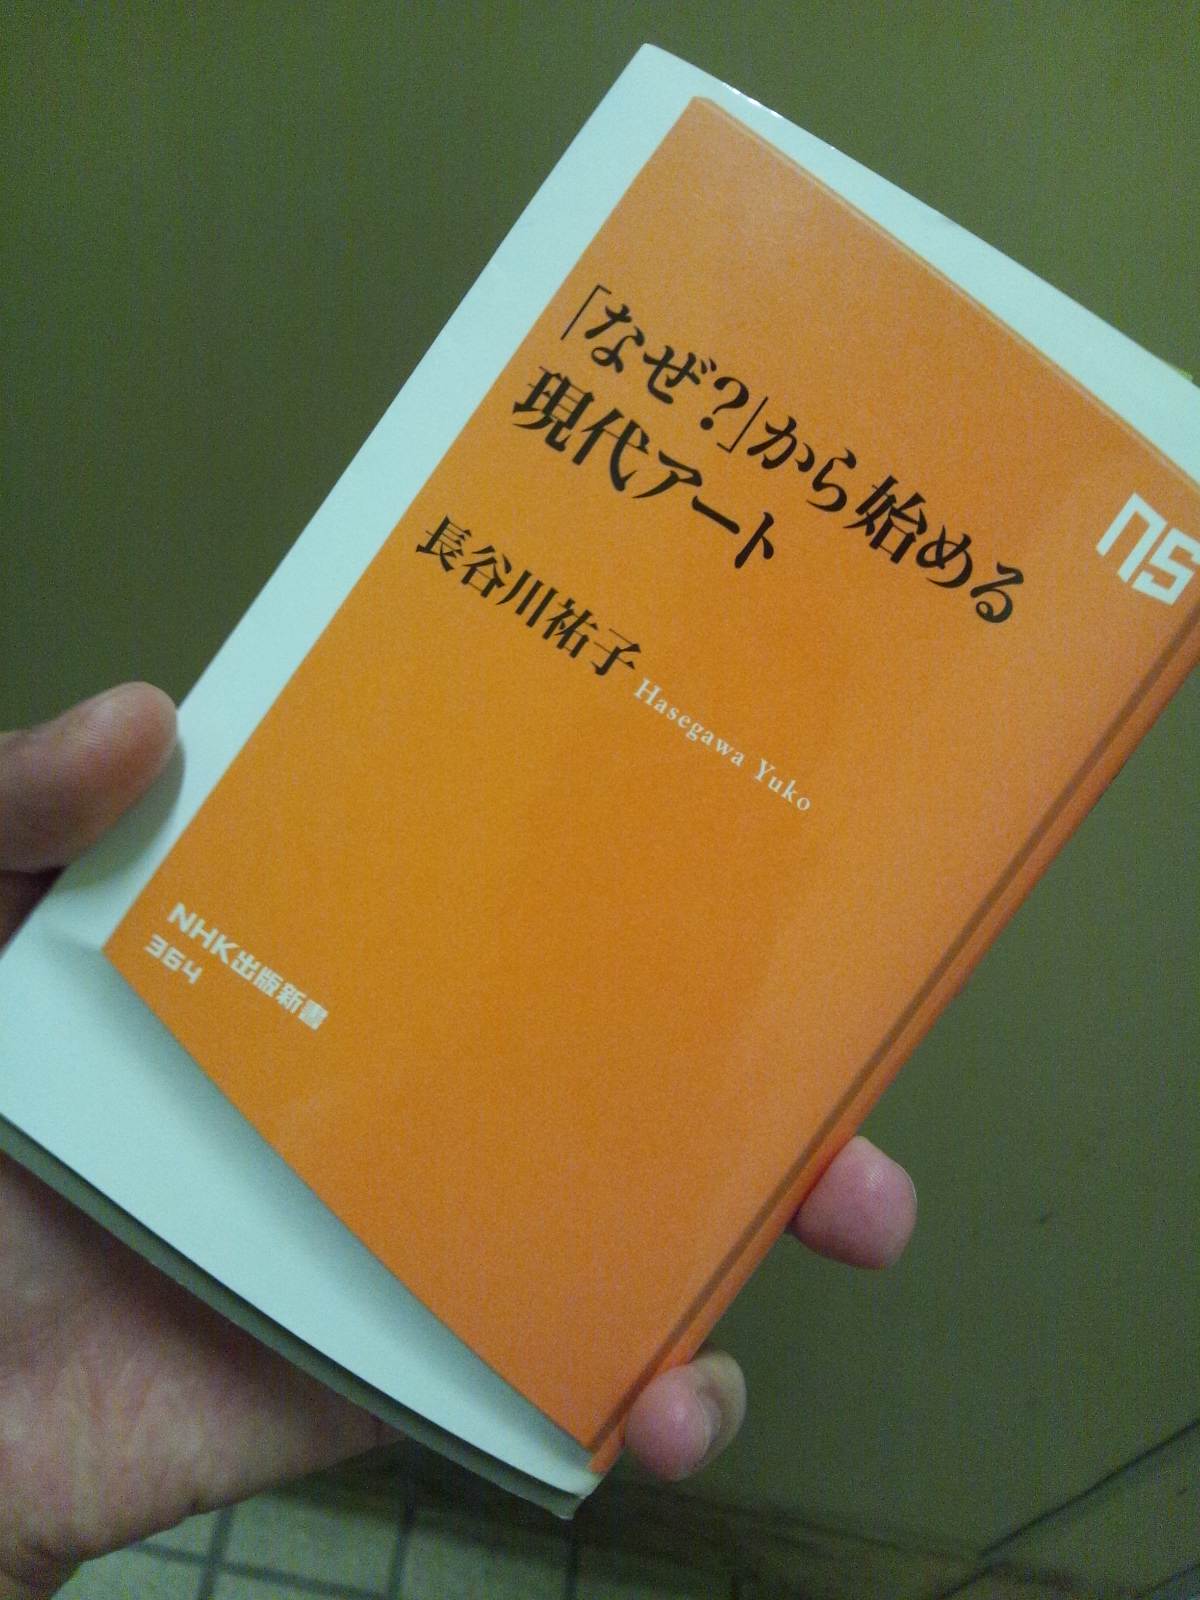 書籍「なぜ？」から始める現代アート(長谷川 祐子/NHK出版)」の表紙画像